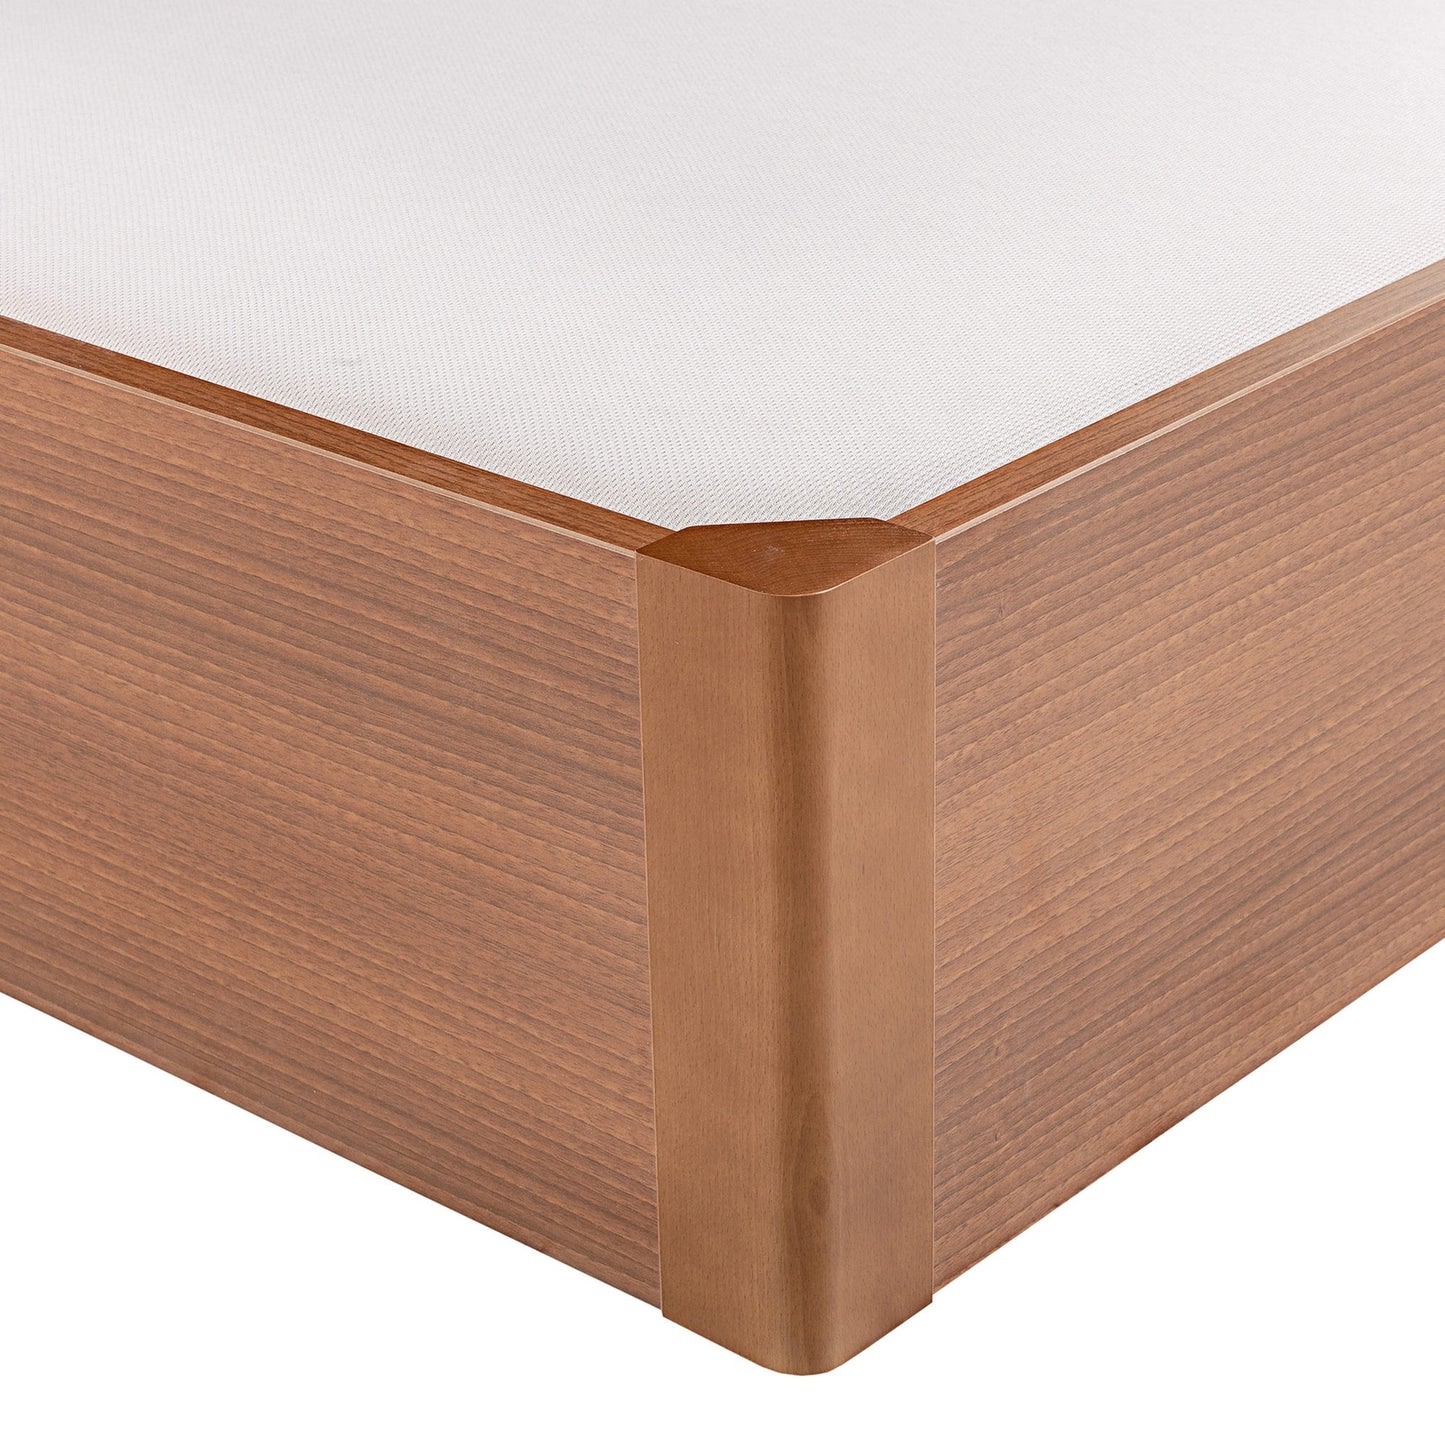 Canapé abatible de madera tapa única de color cerezo - DESIGN - 135x220